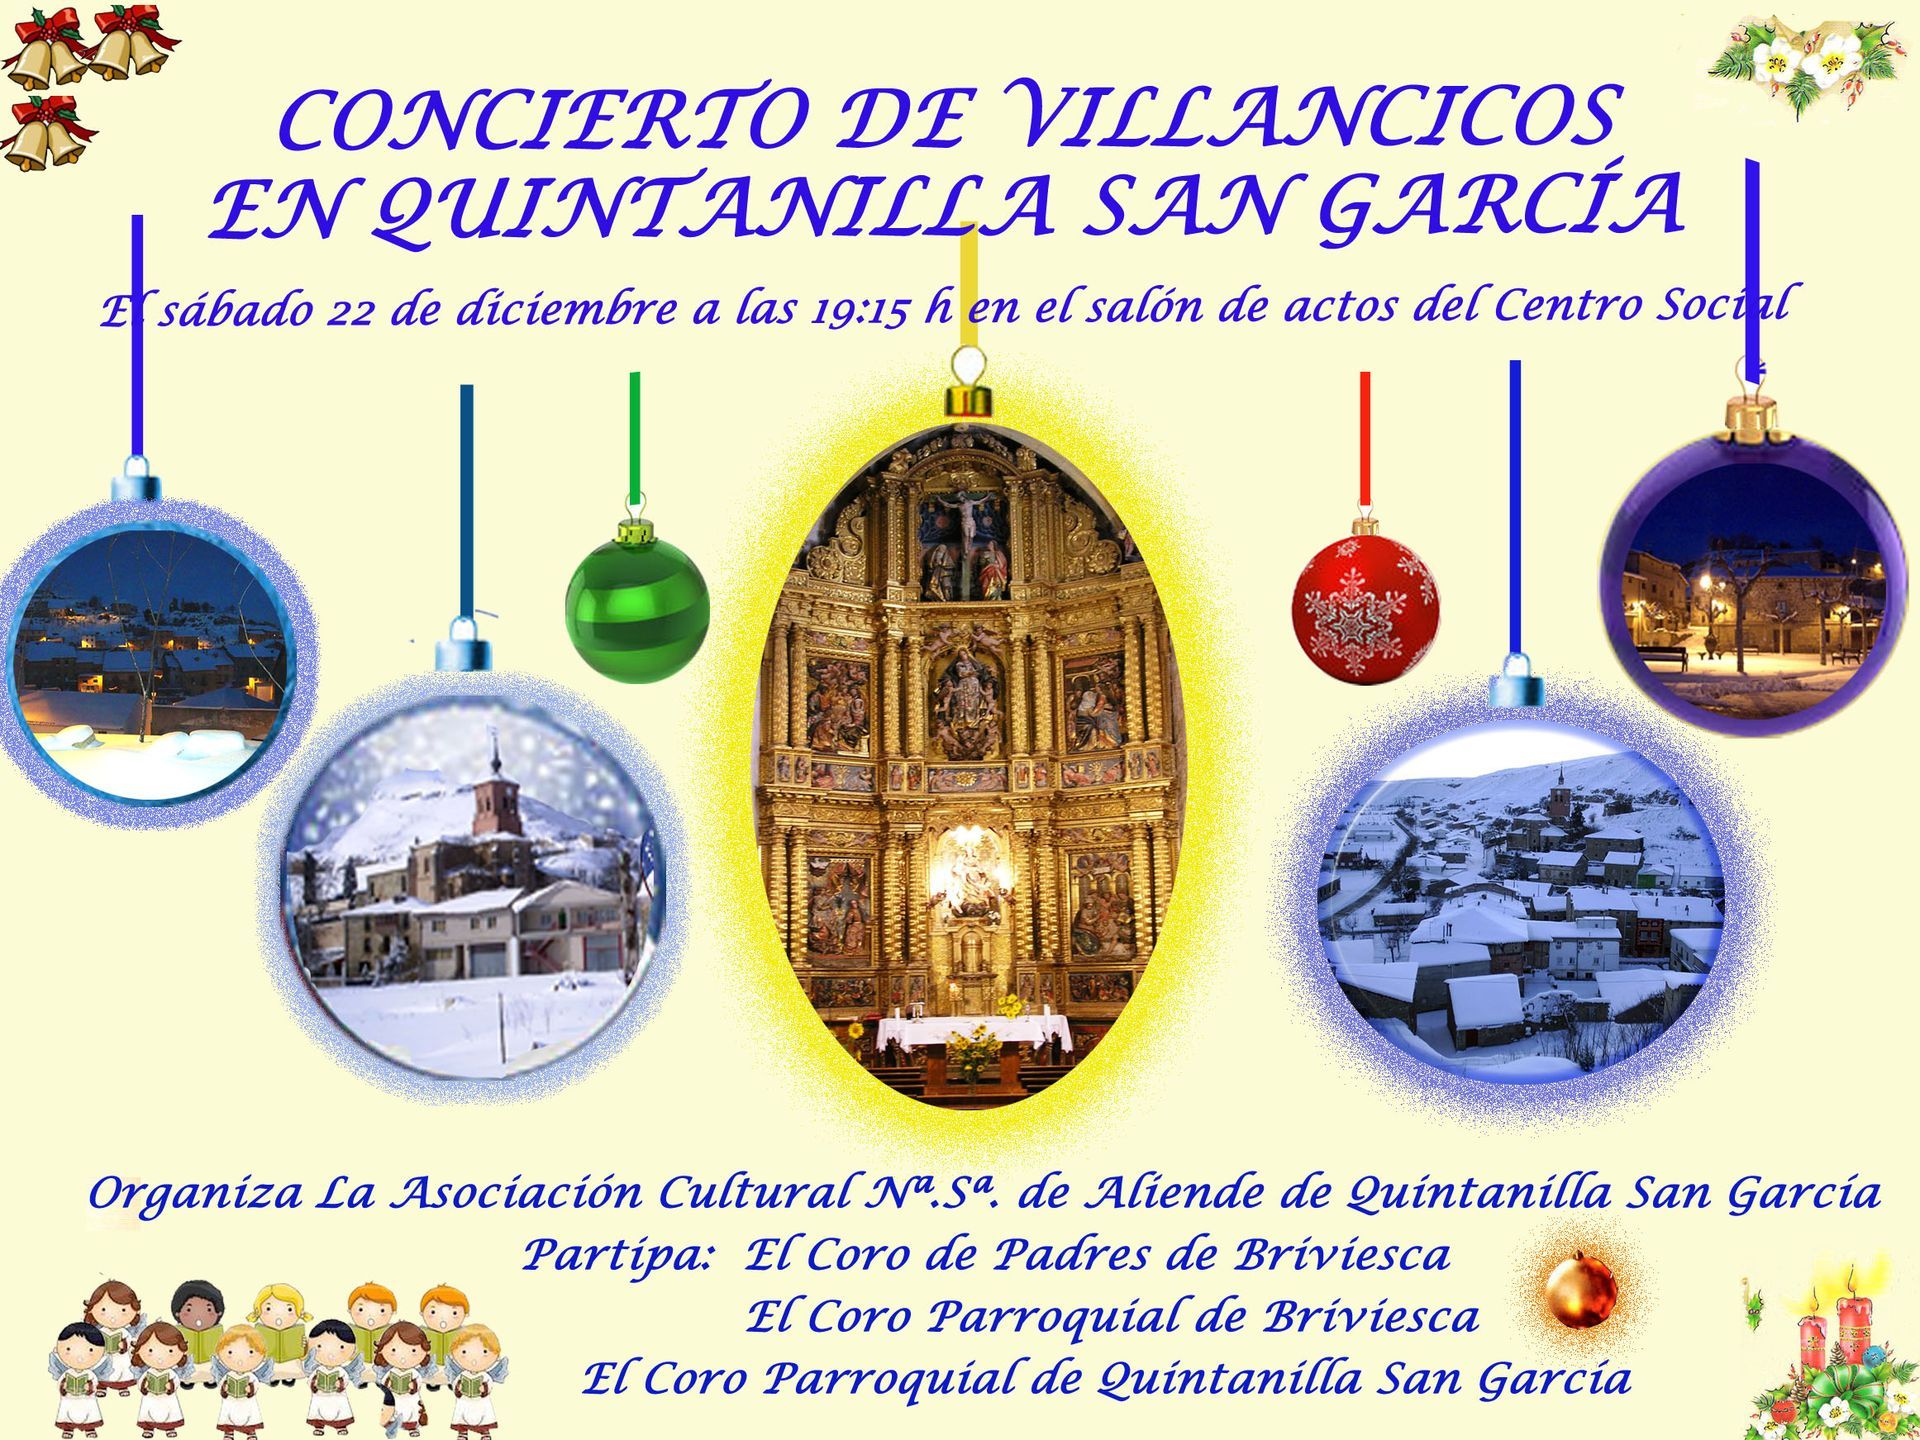 Concierto de Villancicos 2012 en Quintanilla San García